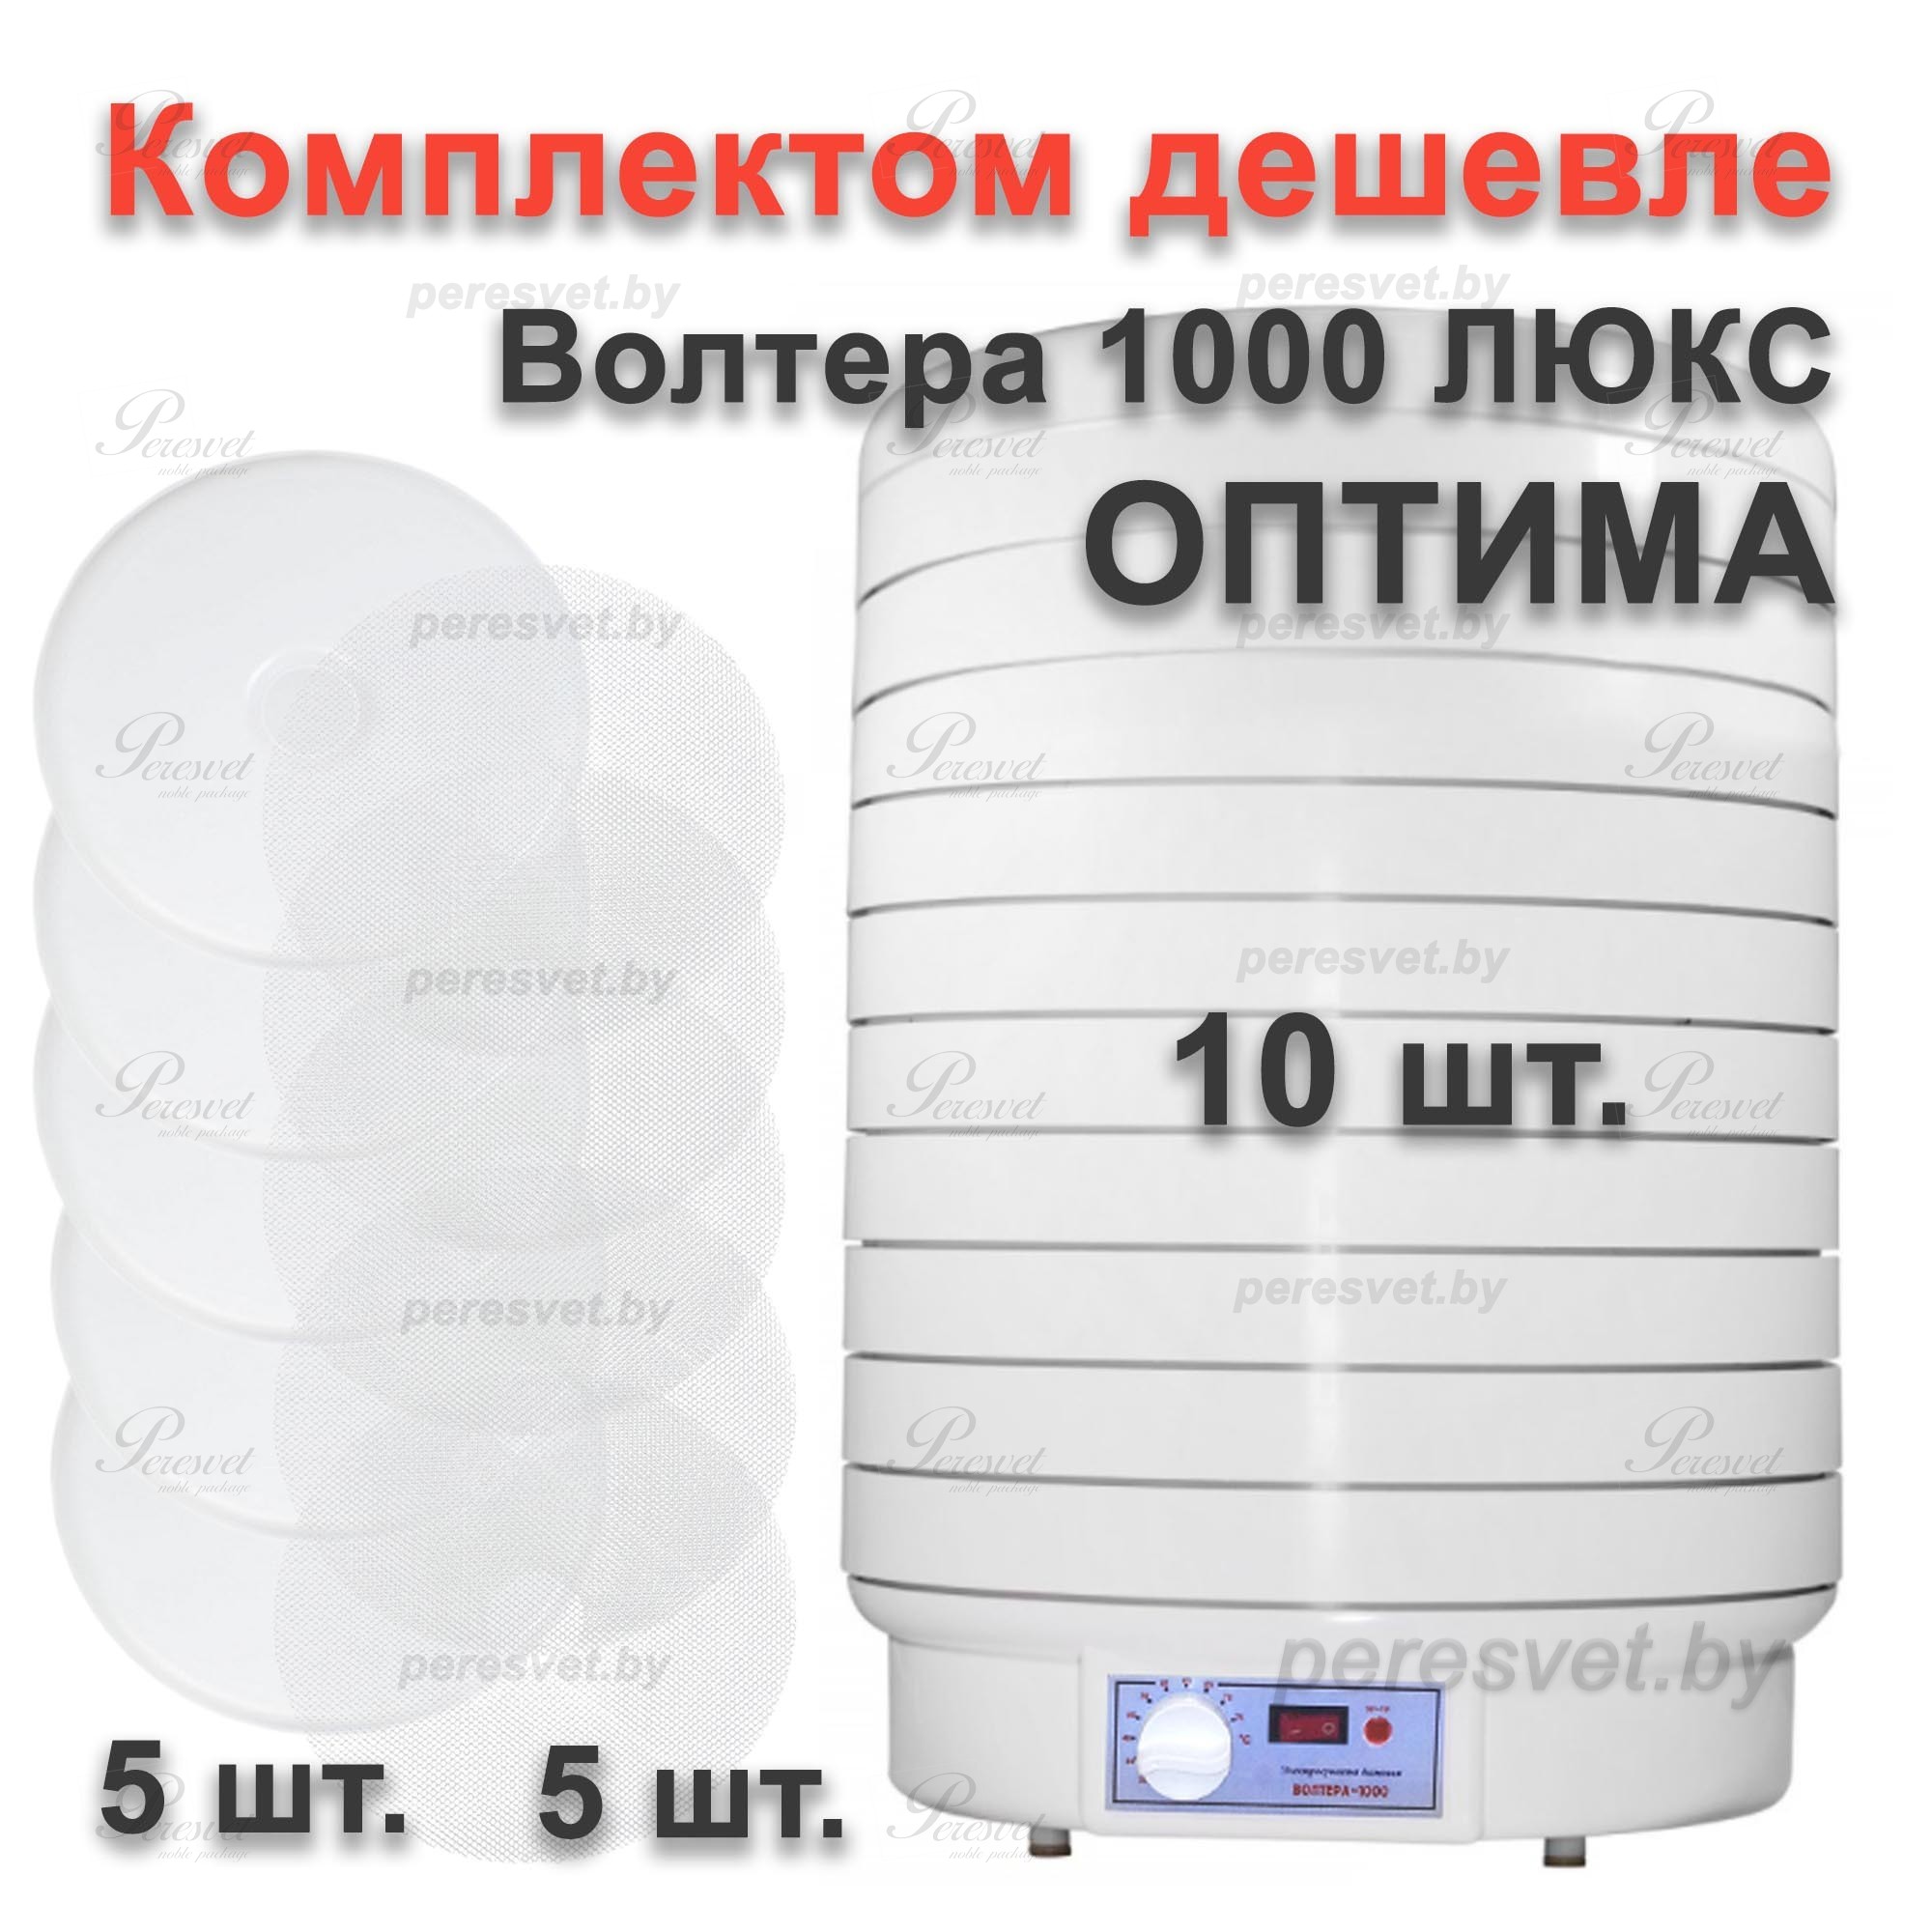 Электросушилка ВОЛТЕРА 1000 ЛЮКС, комплект ОПТИМА